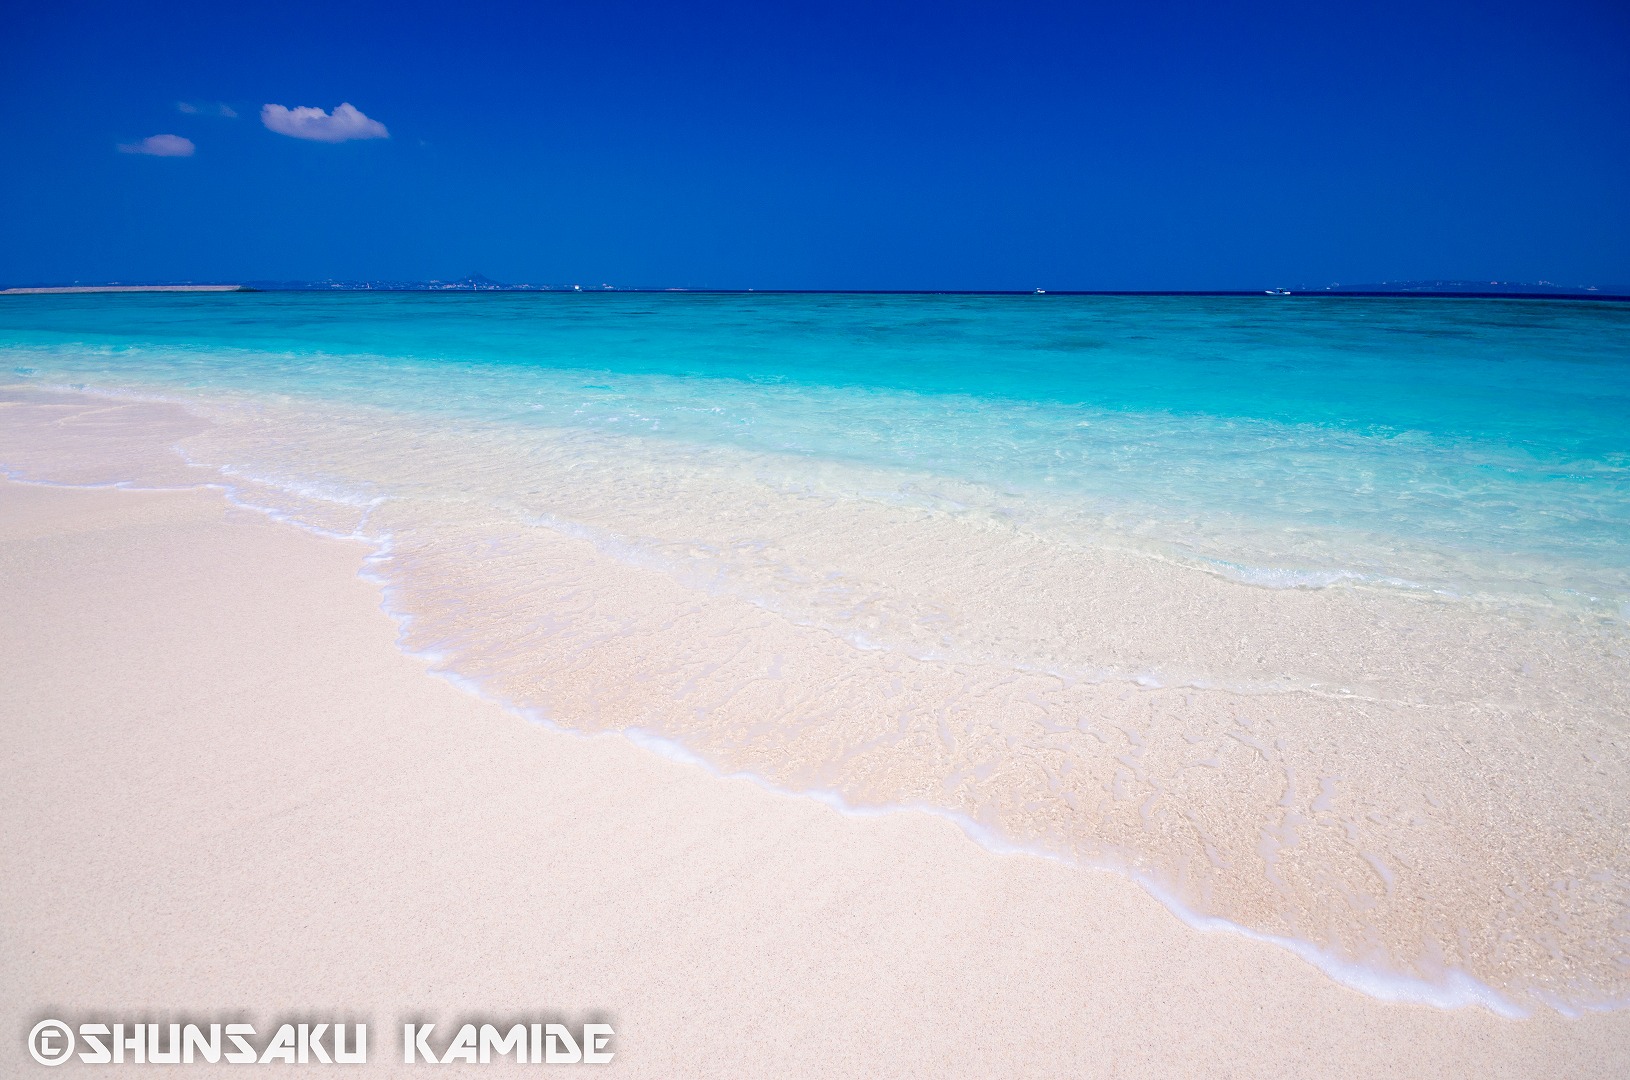 天国みたいな島 水納島でダイビング 輝くサンゴと白い砂 グッと寄れる あの被写体 まで その魅力を紹介します ダイビングと海の総合サイト オーシャナ